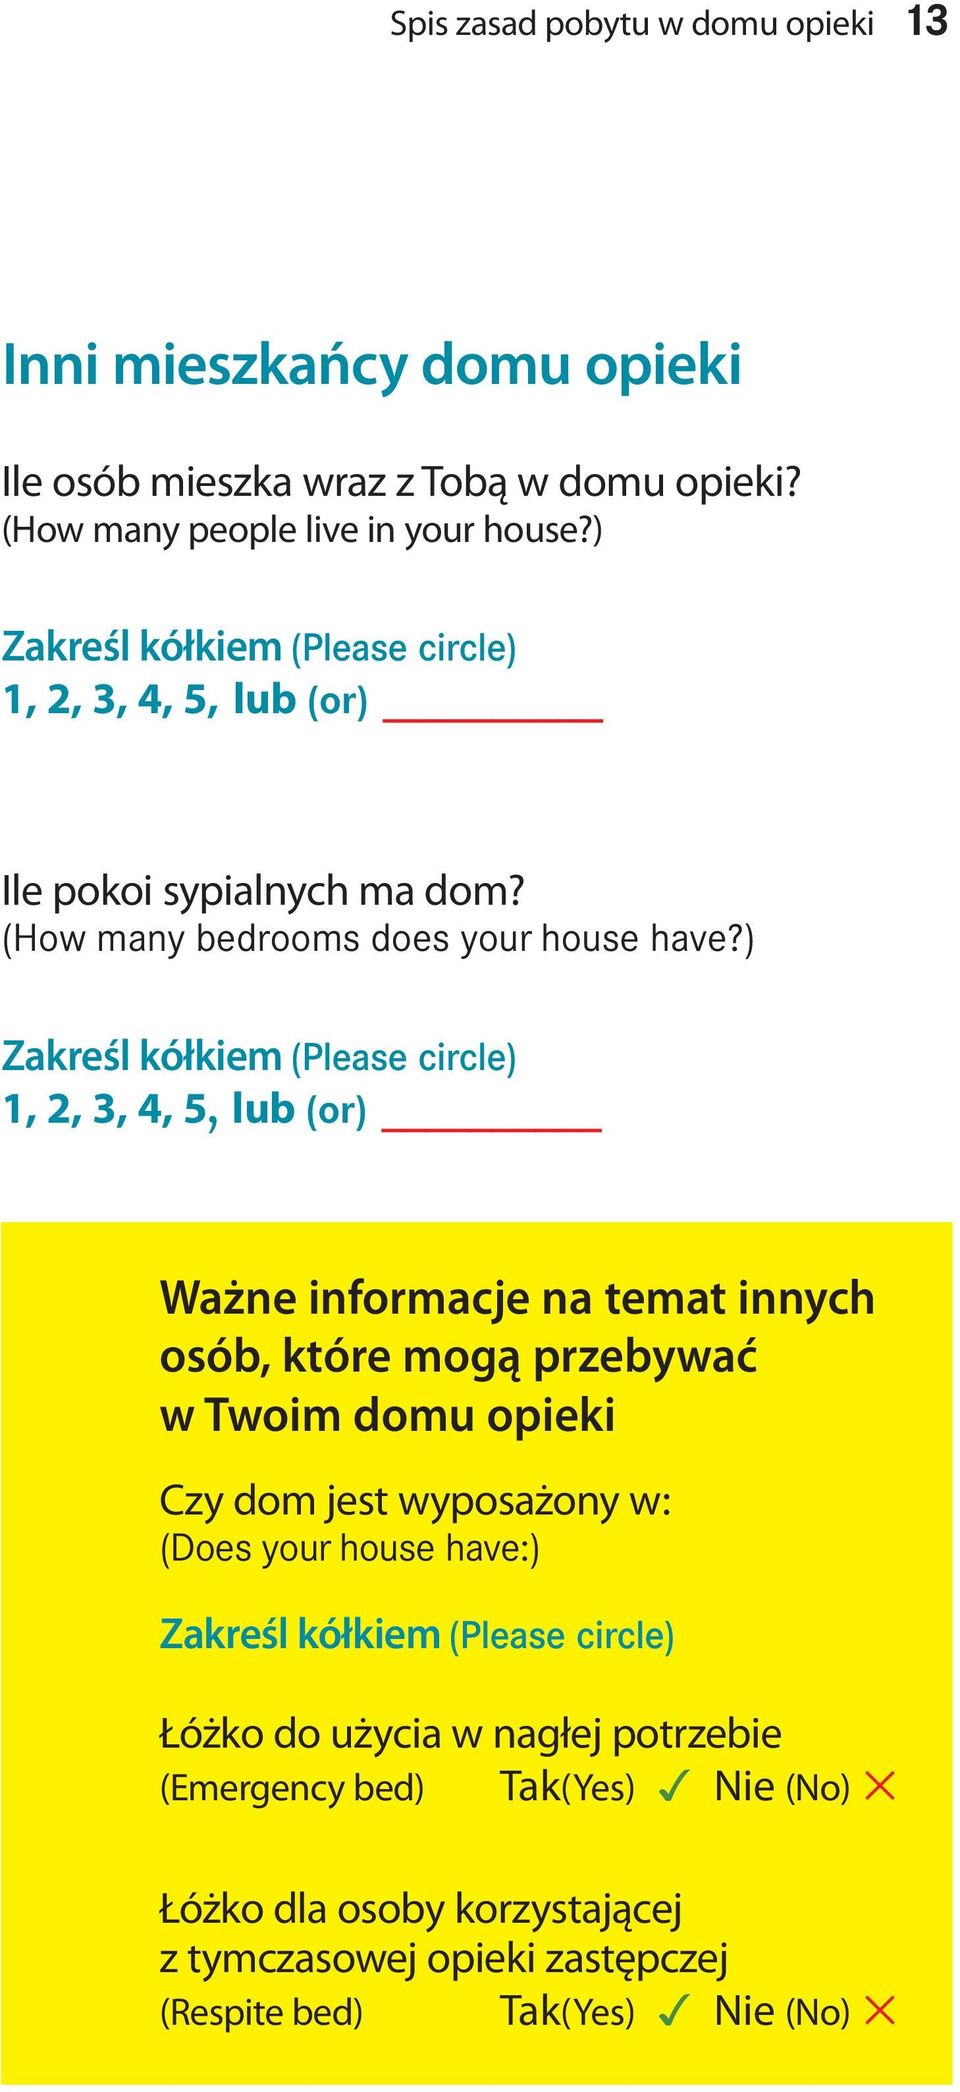 ) Zakreśl kółkiem (Please circle) 1, 2, 3, 4, 5, lub (or) Ważne informacje na temat innych osób, które mogą przebywać w Twoim domu opieki Czy dom jest wyposażony w: